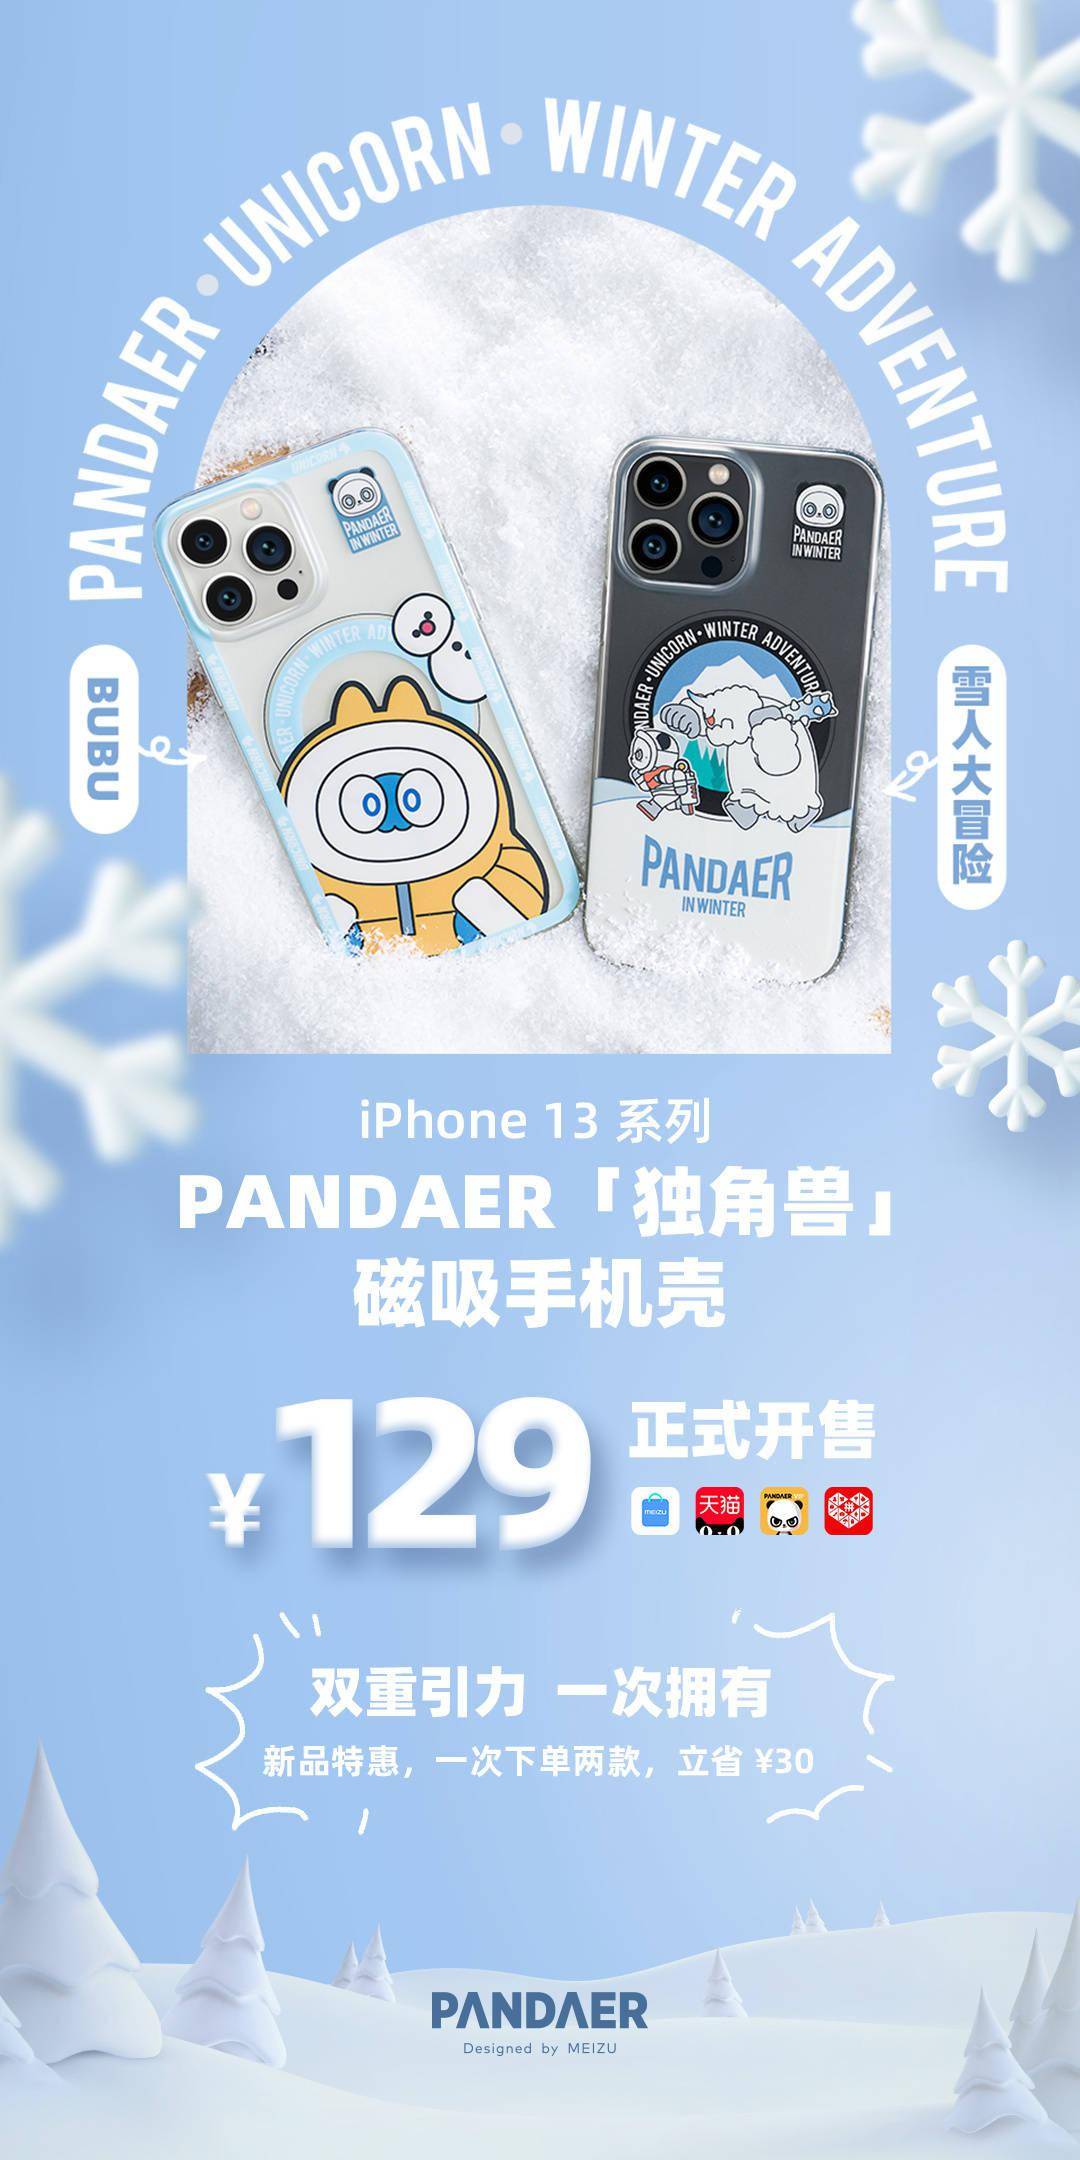 独角兽|魅族 PANDAER「独角兽」iPhone 13 磁吸手机壳开售：129 元